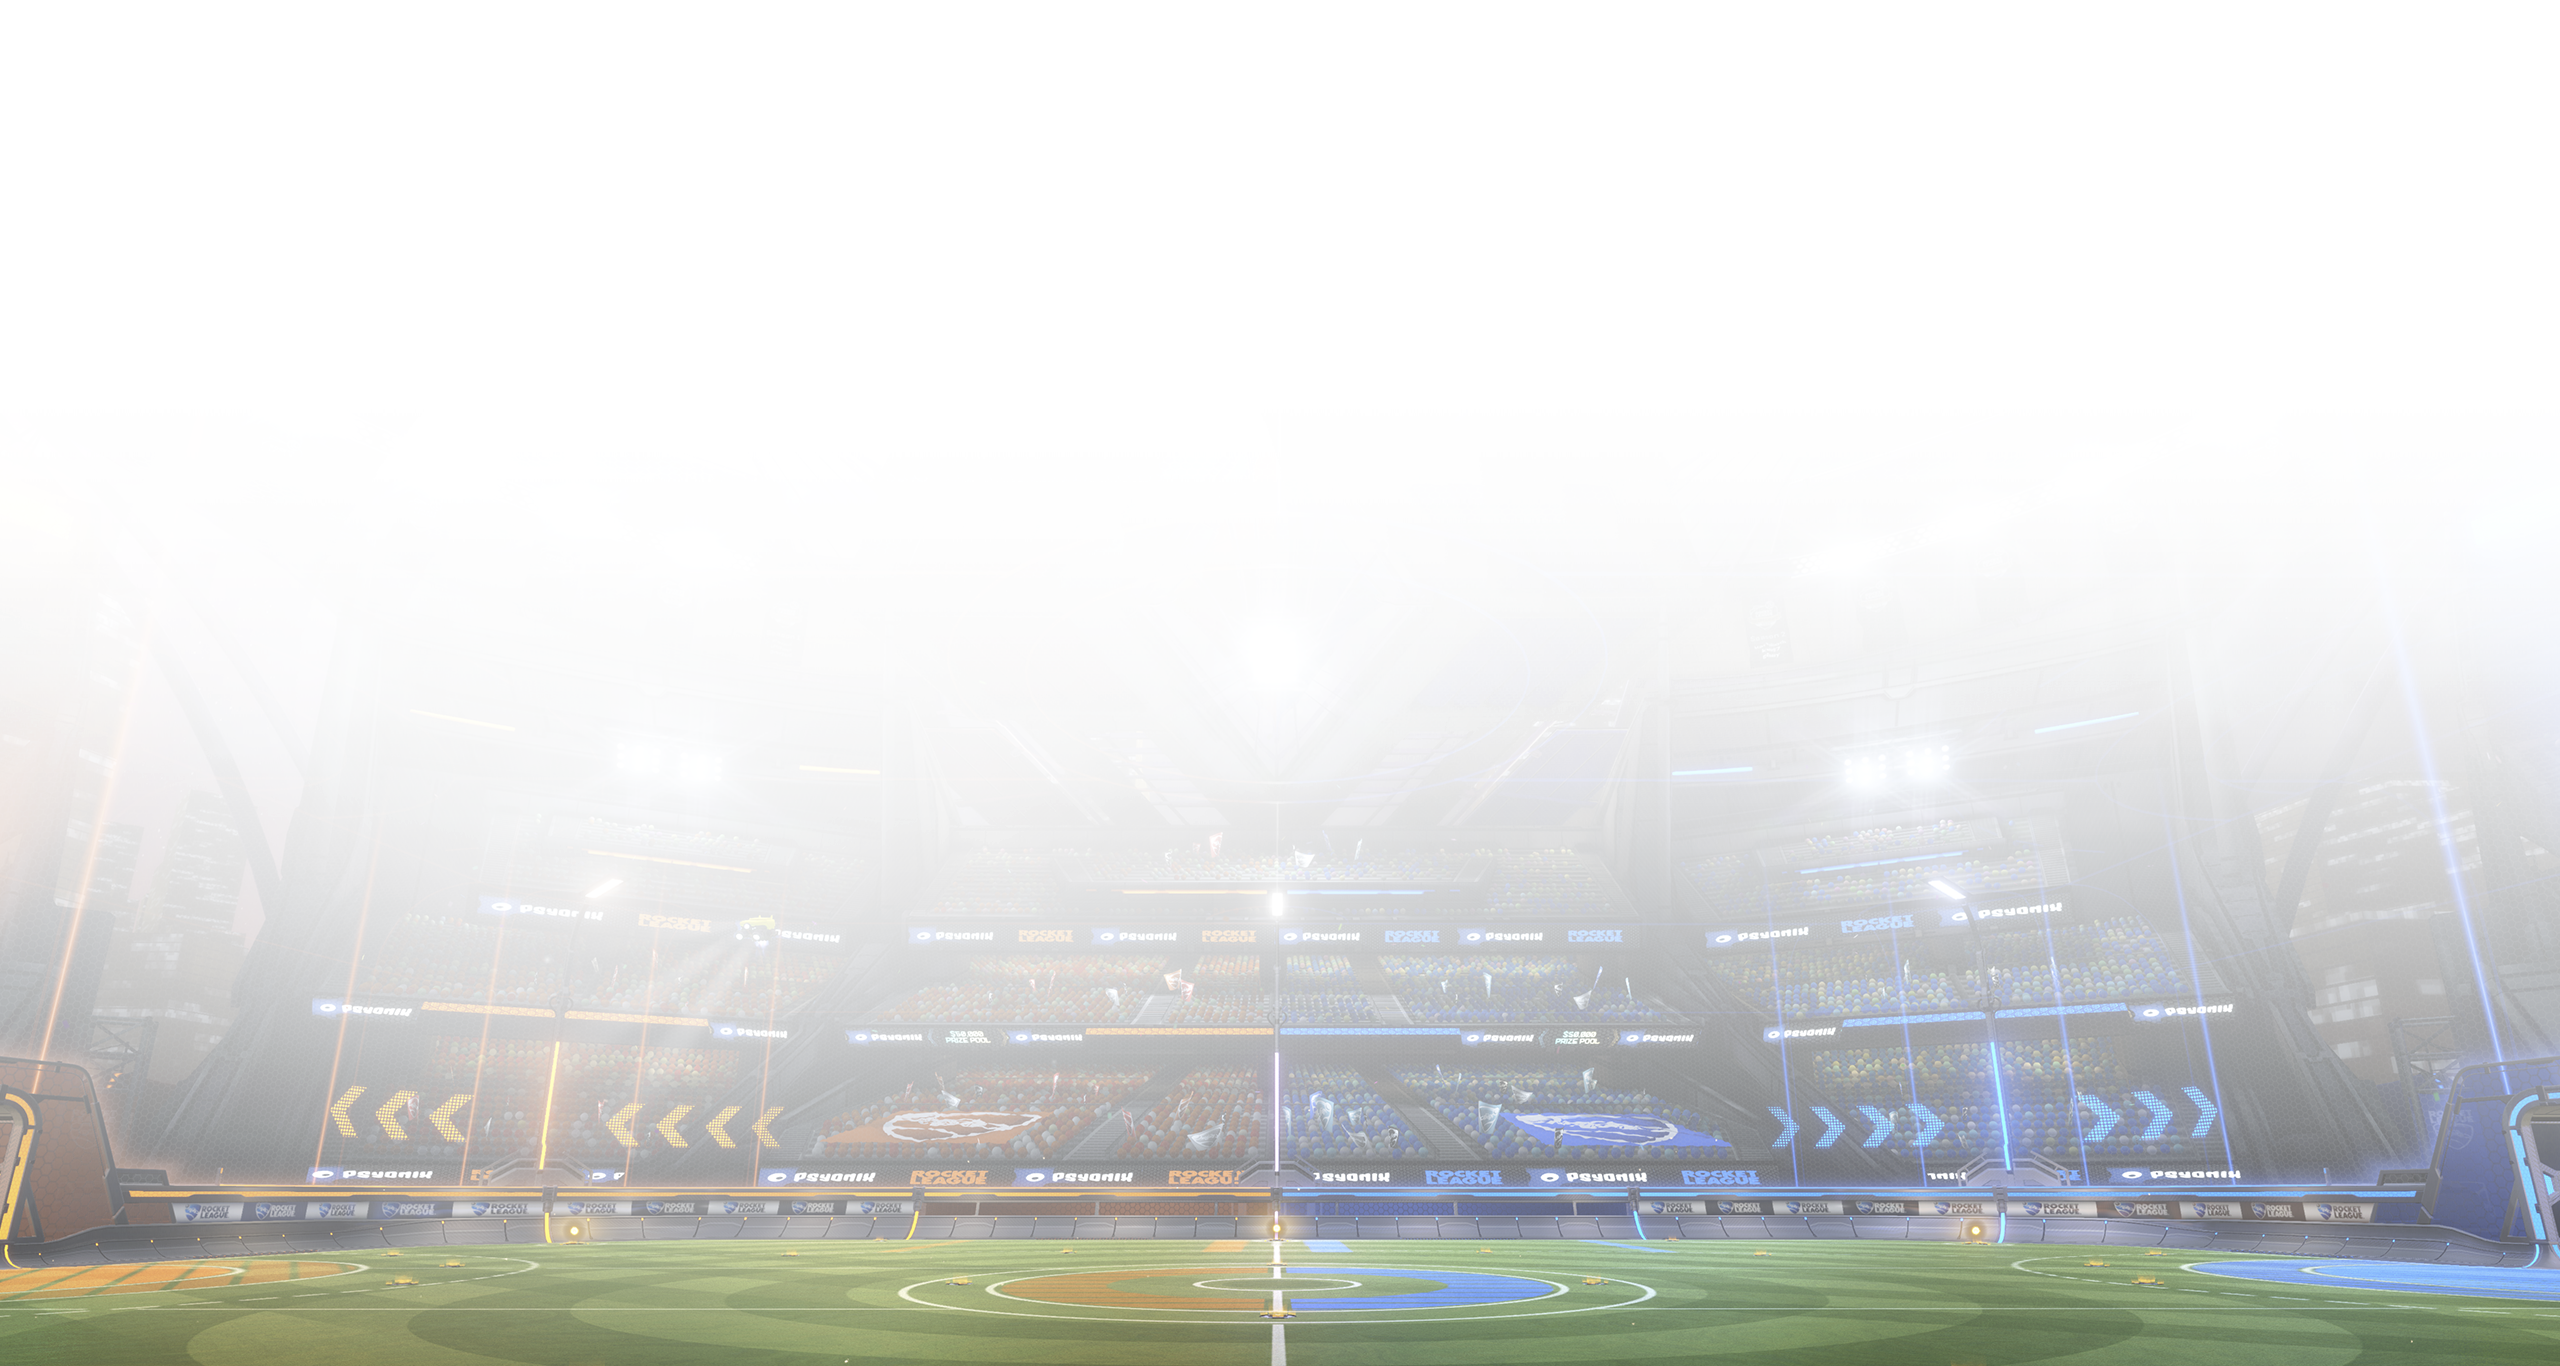 Rocket league – zrzut ekranu przedstawiający boisko otoczone przez trybuny